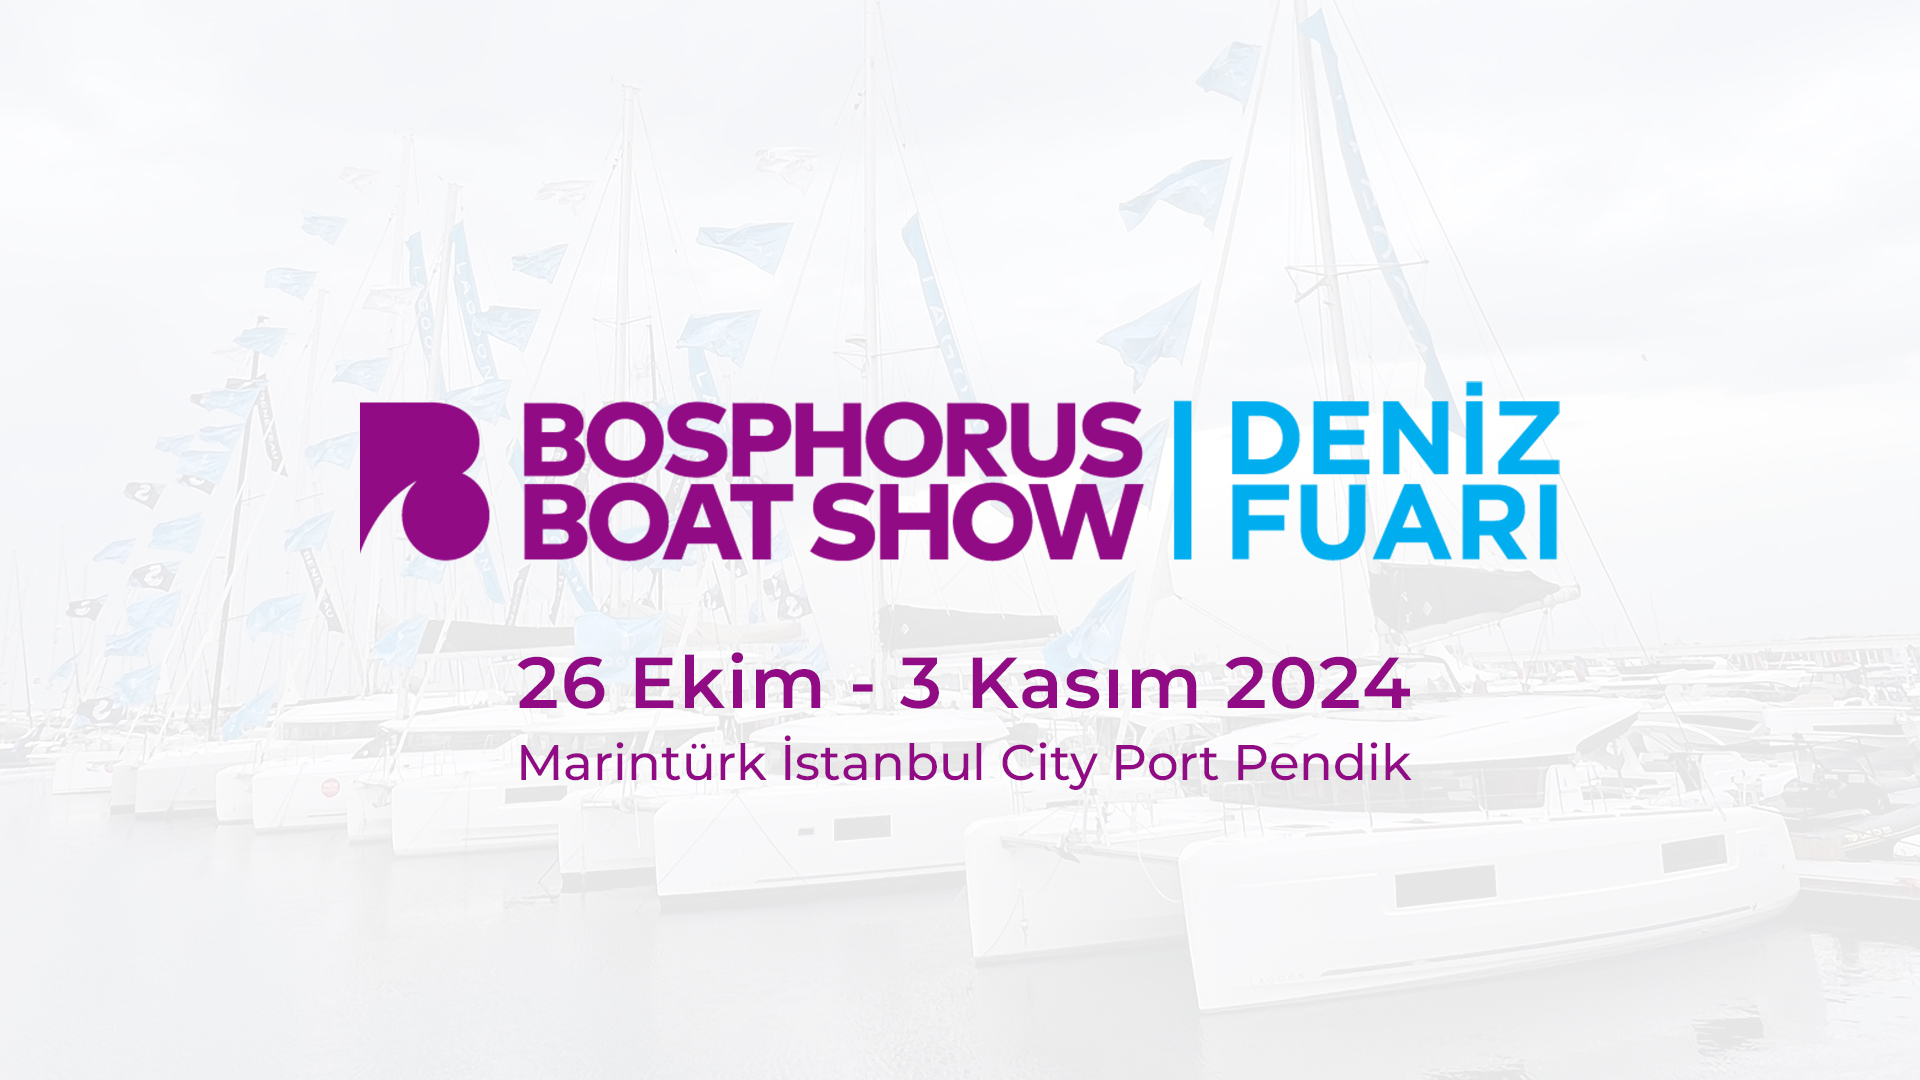 Bosphorus Boat Show 2024  |  Deniz